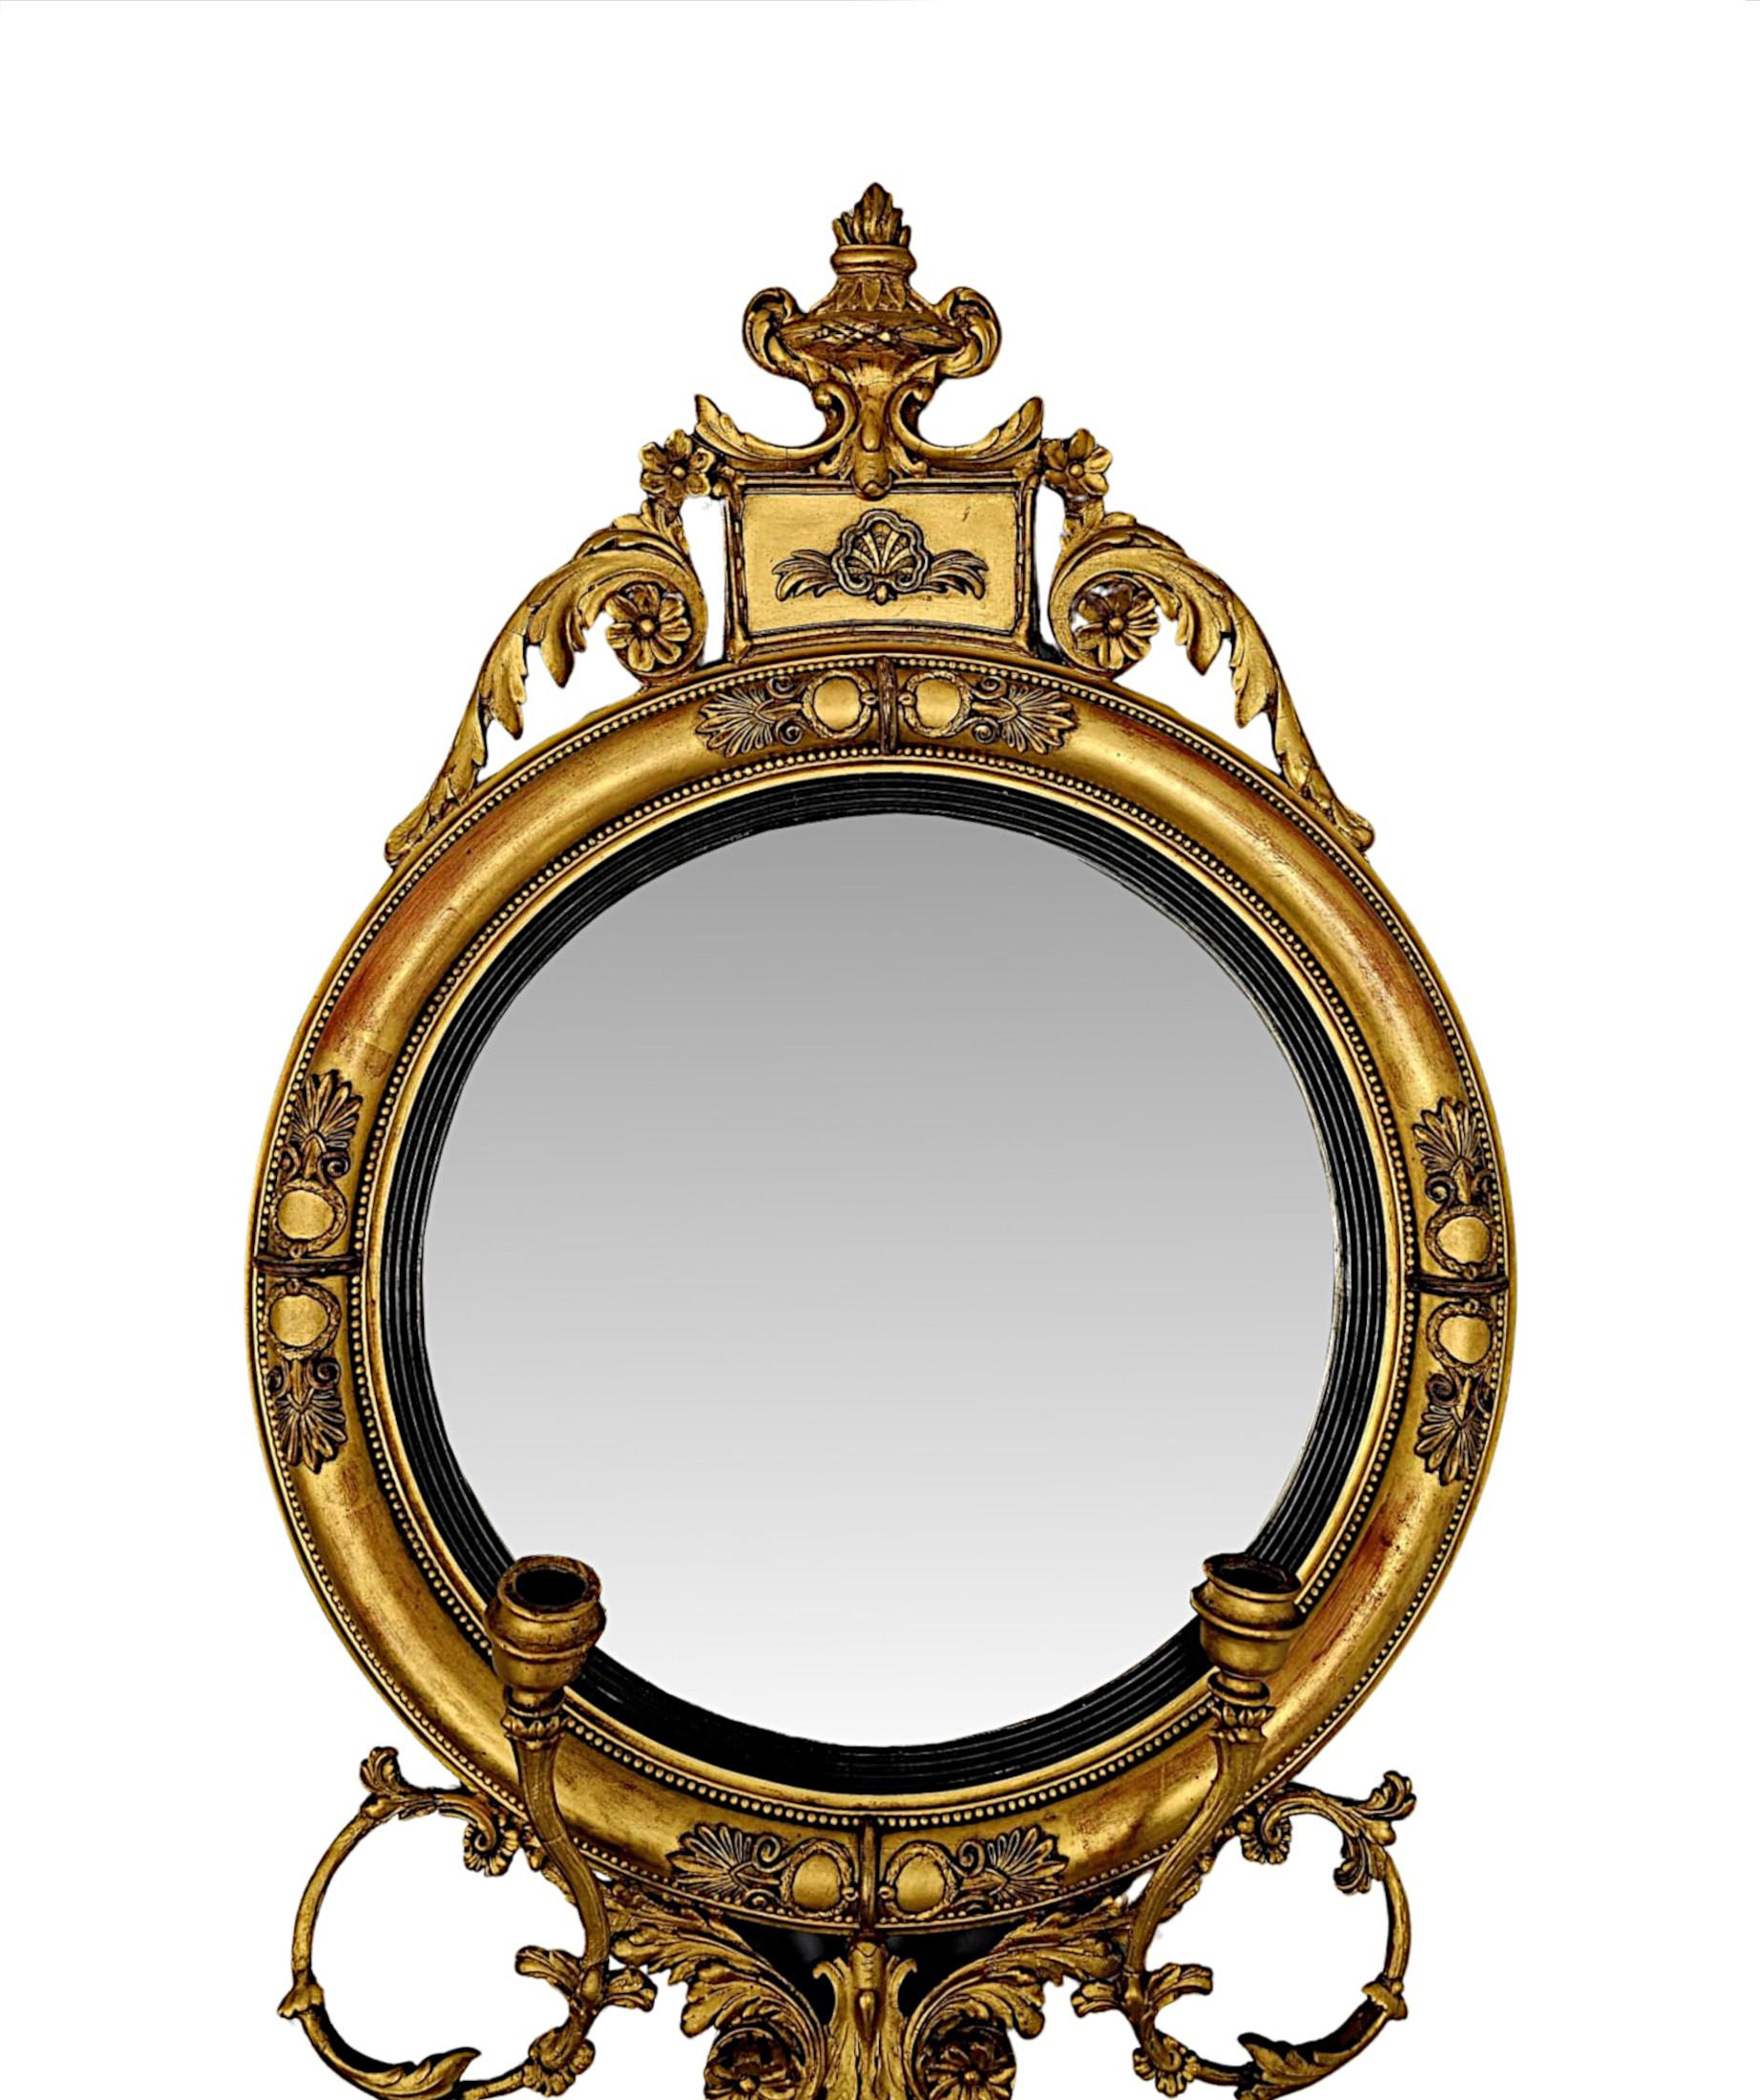 Un très rare et fin miroir girondole en bois doré du 19ème siècle, d'une qualité exceptionnelle.  La plaque de verre miroir convexe de forme circulaire est enchâssée dans un superbe cadre en bois doré sculpté à la main, mouluré et cannelé, avec de